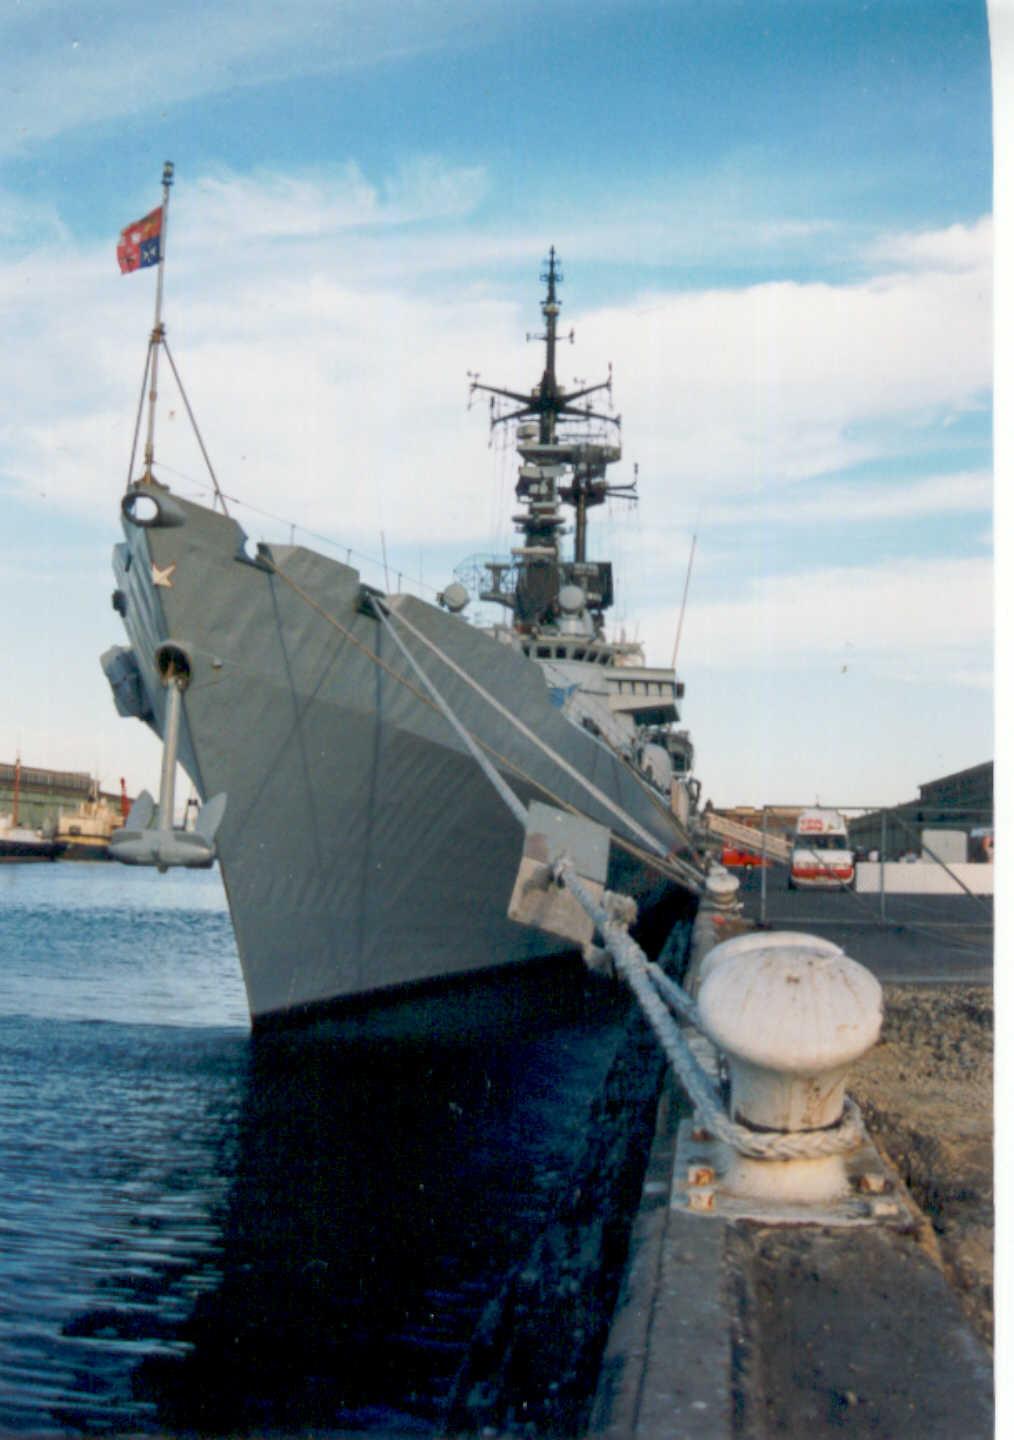 At Port Adelaide berth during 1997 visit.